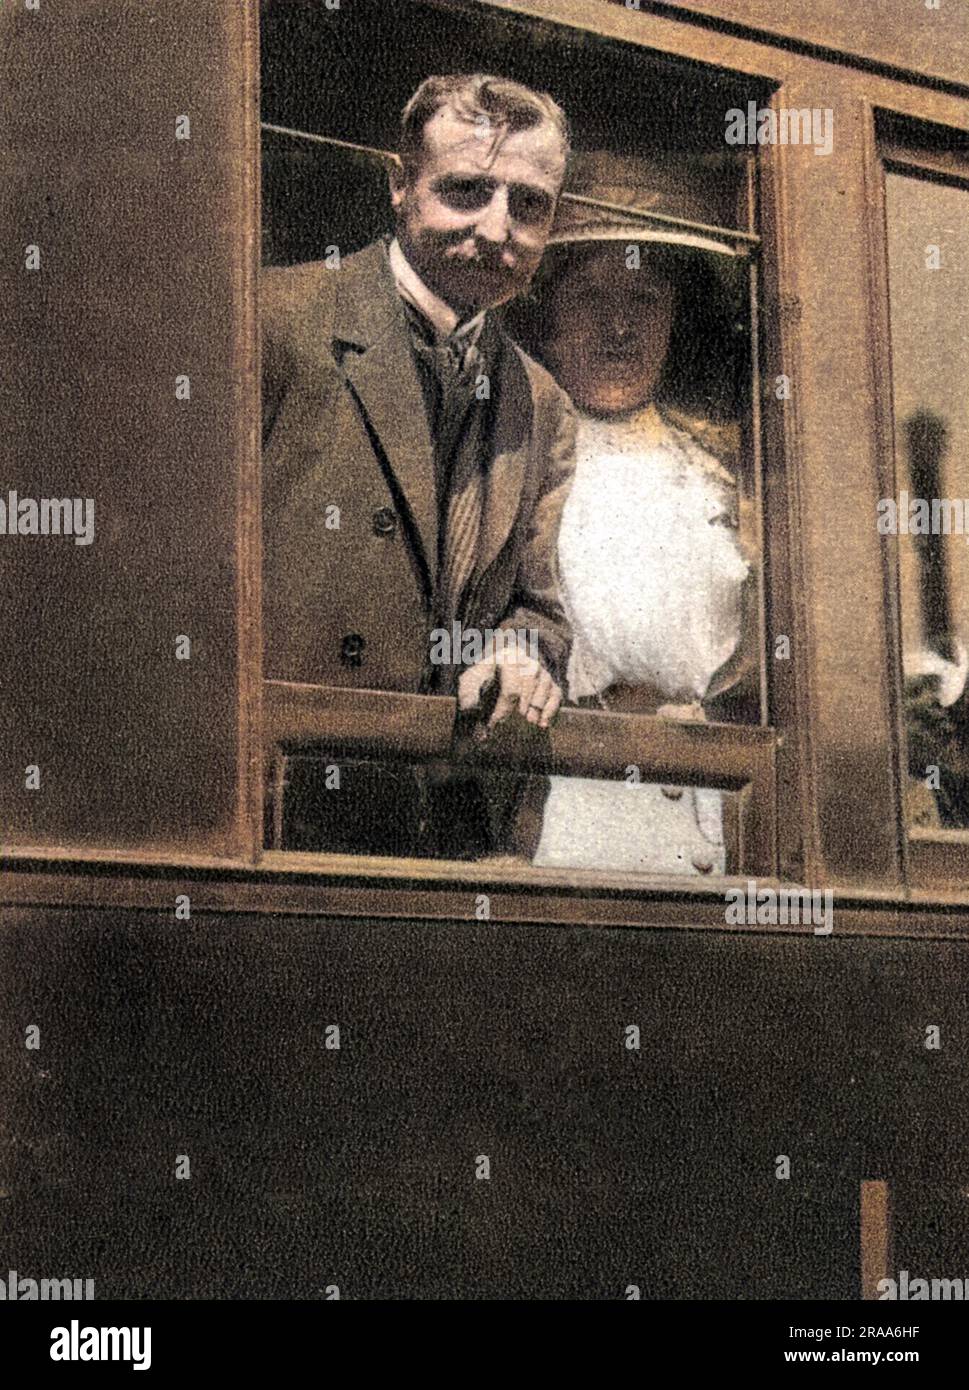 LOUIS BLERIOT, aviateur français, et son épouse retournent en train à Paris après son vol de la Manche en 1909. Date: 1872 - 1936 Banque D'Images